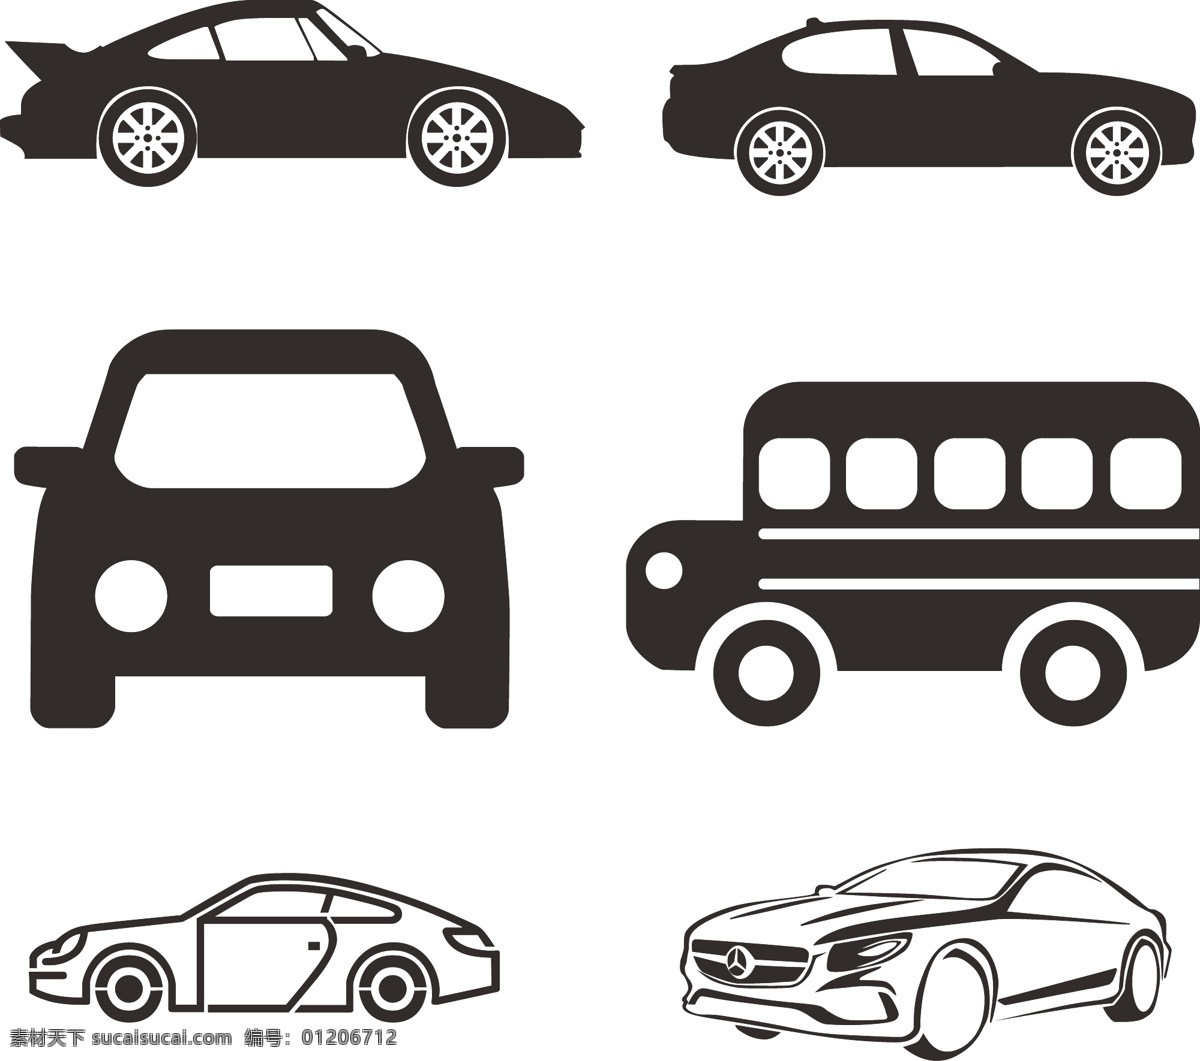 汽车 矢量图 汽车矢量图 各种汽车 简单汽车图 标志图标 其他图标